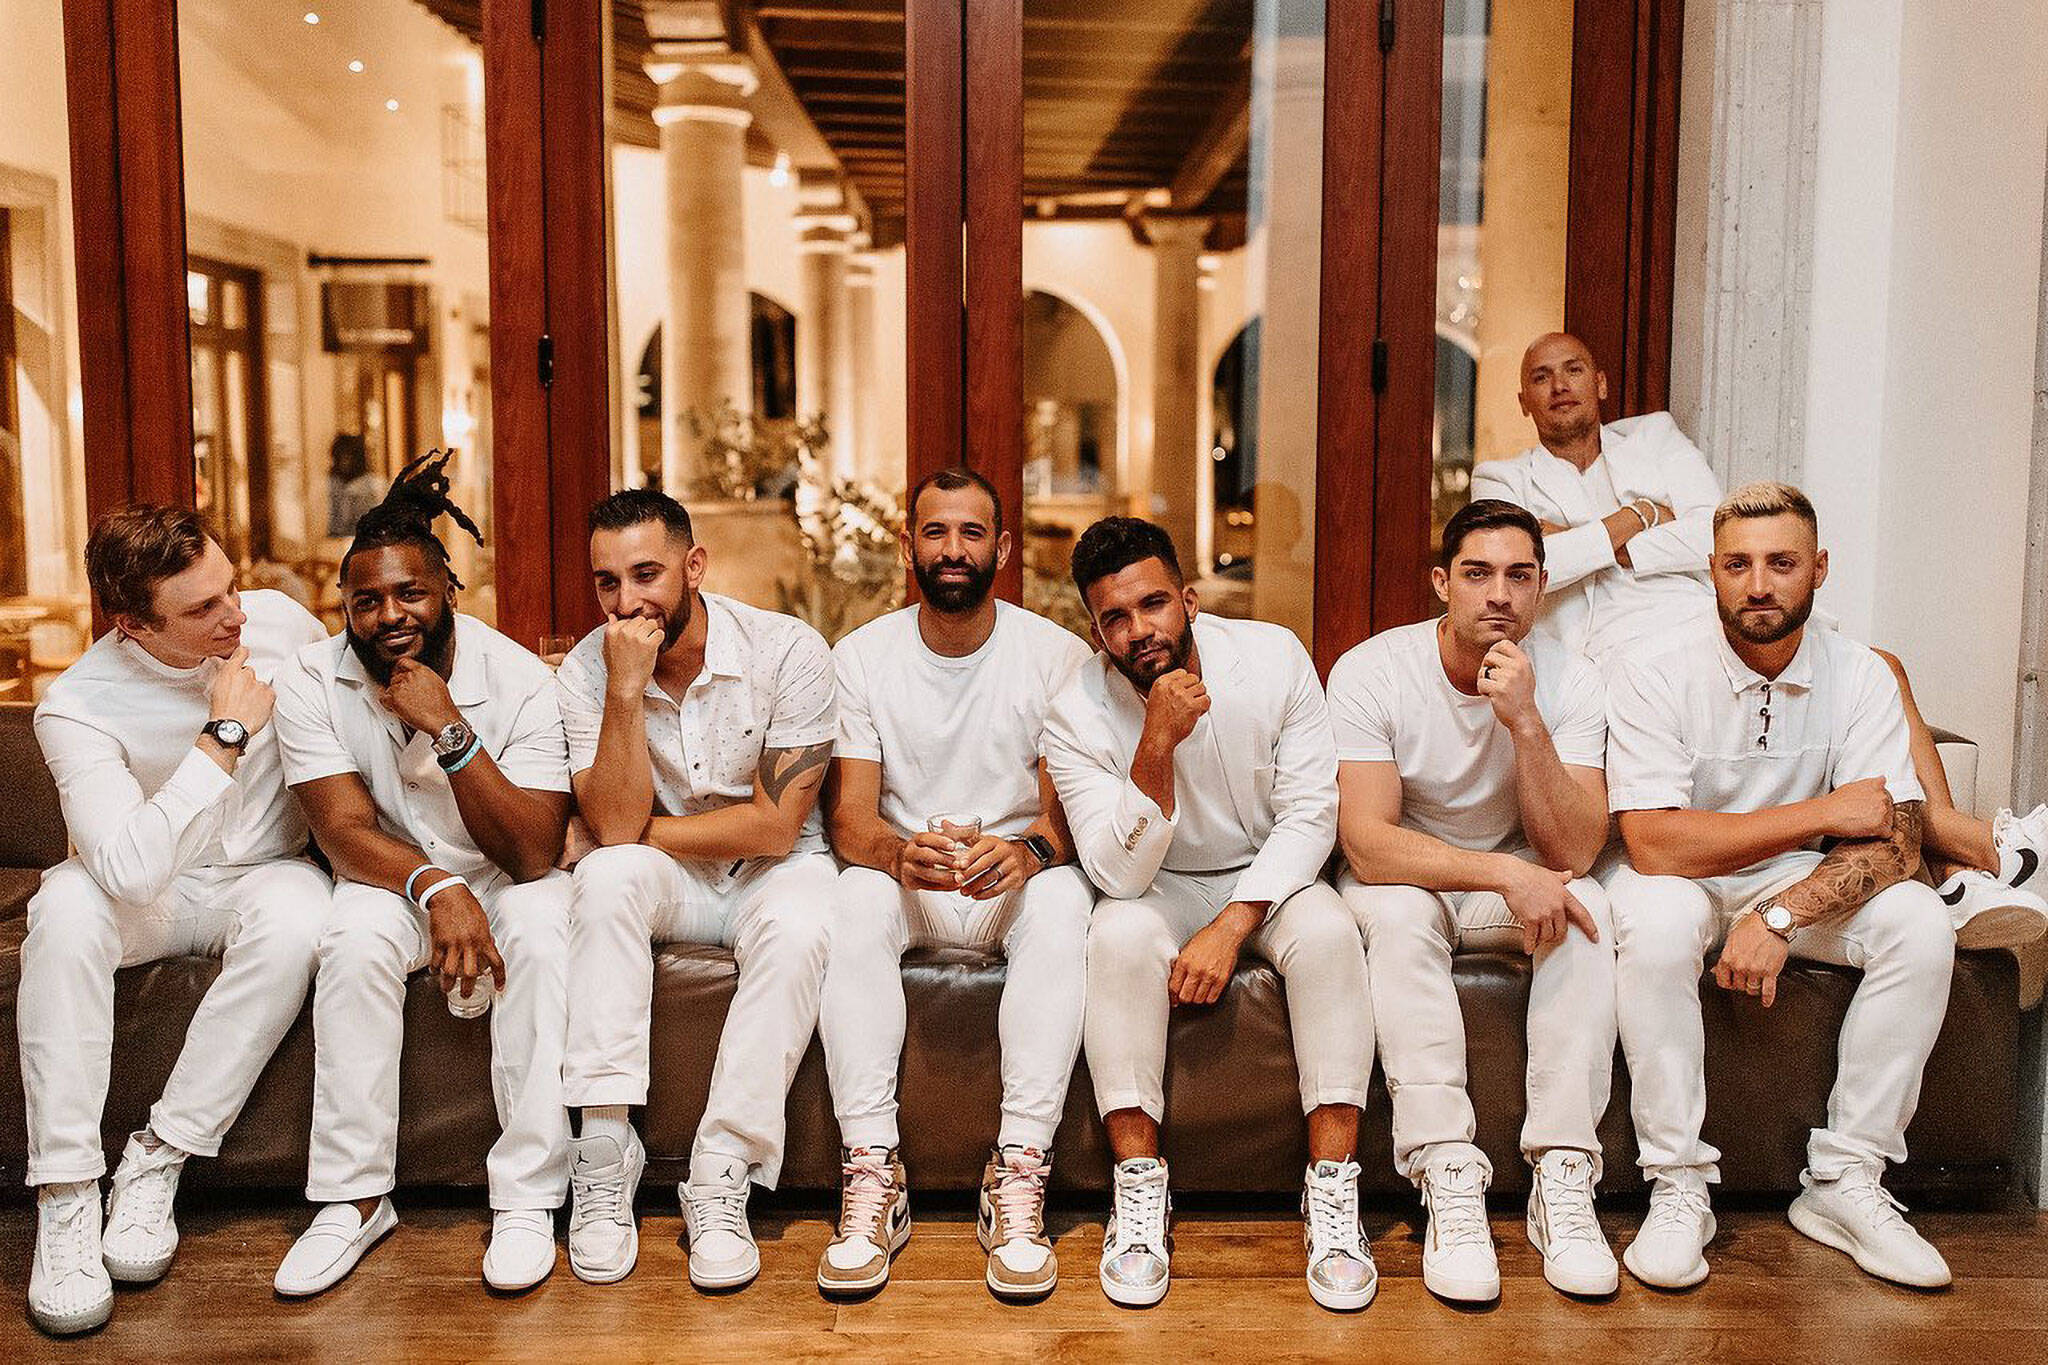 Toronto Blue Jays just reunited as Backstreet Boys at former